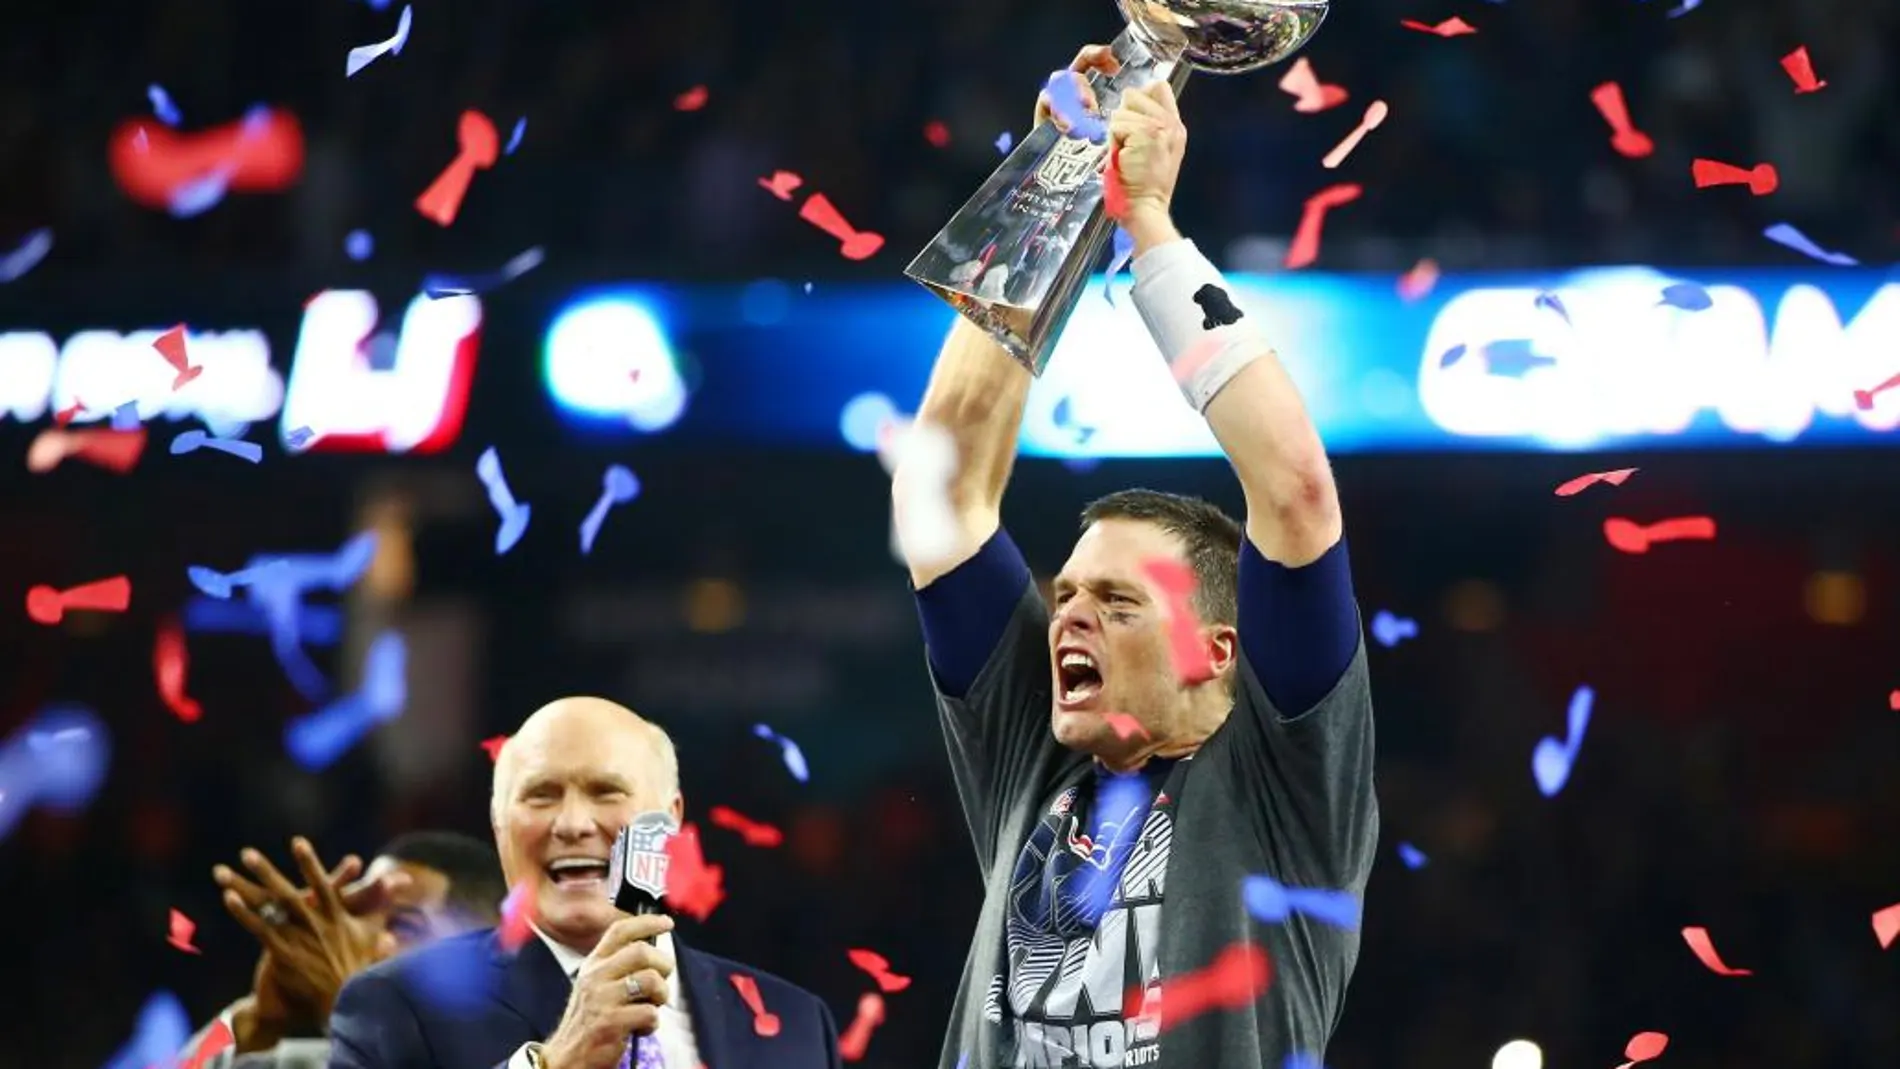 El quaterback de New England Patriots, Tom Brady, levanta el trofeo de campeón